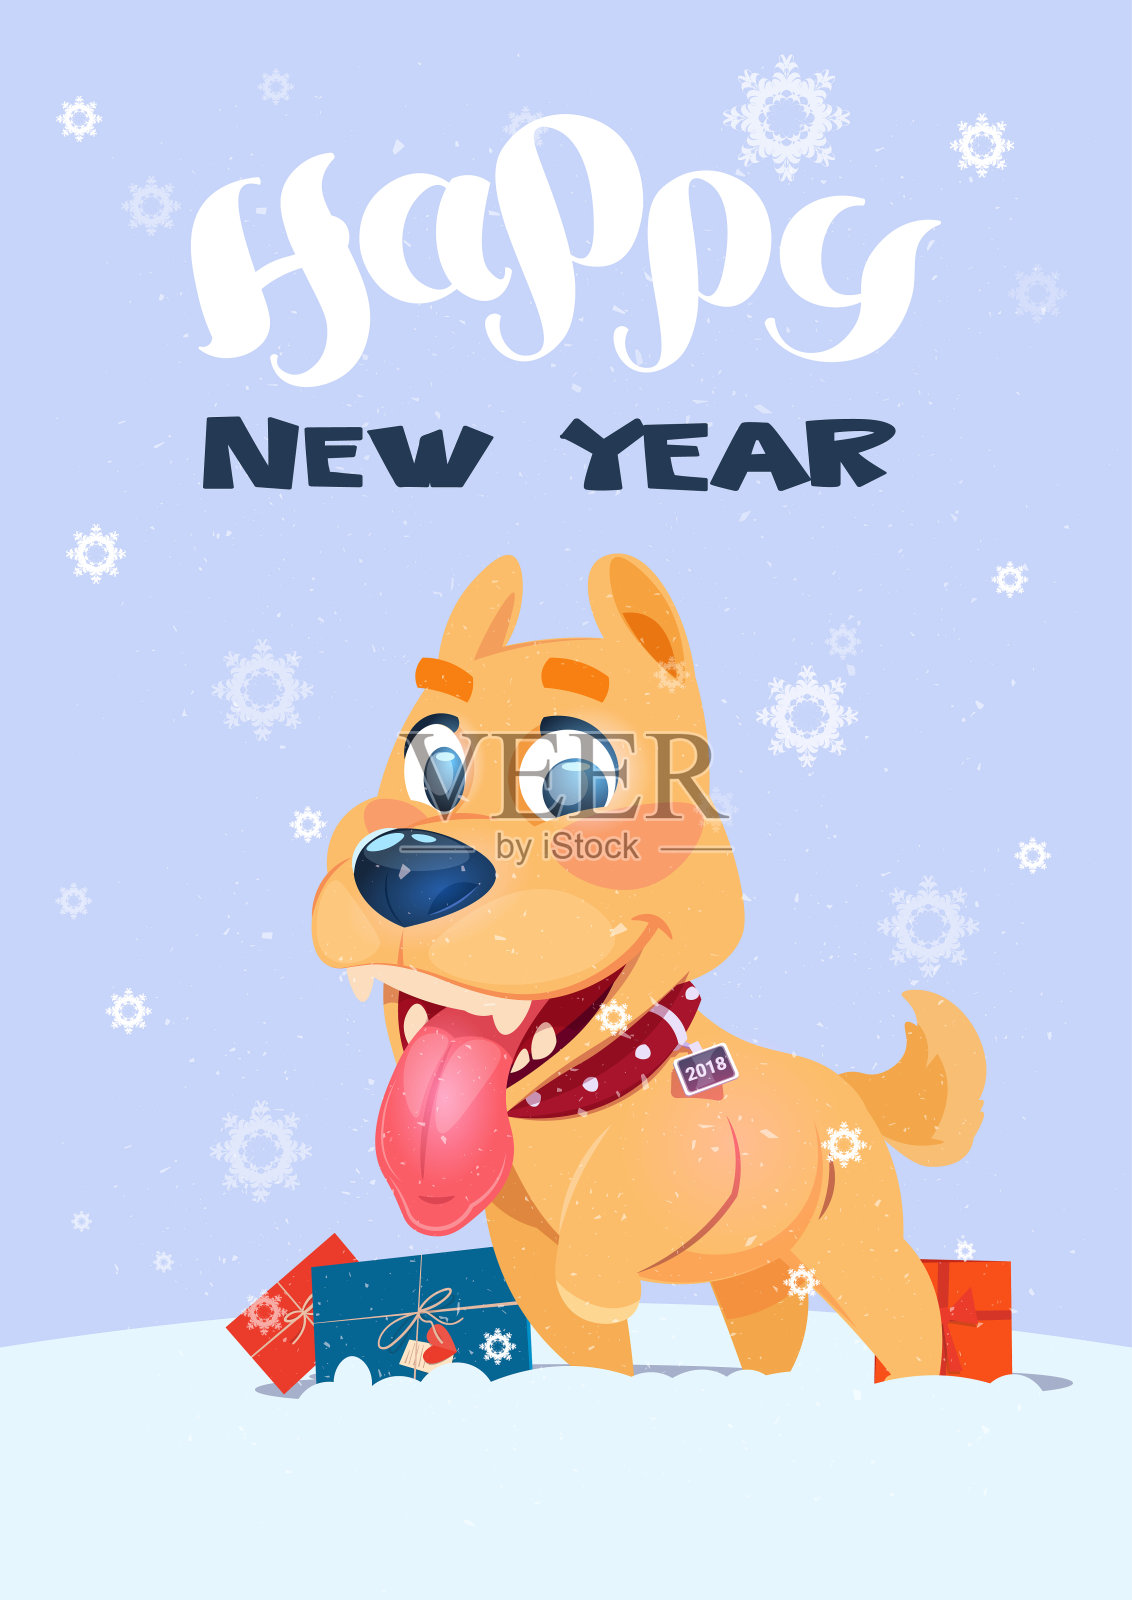 新年快乐海报狗与礼物在雪花的背景设计模板素材